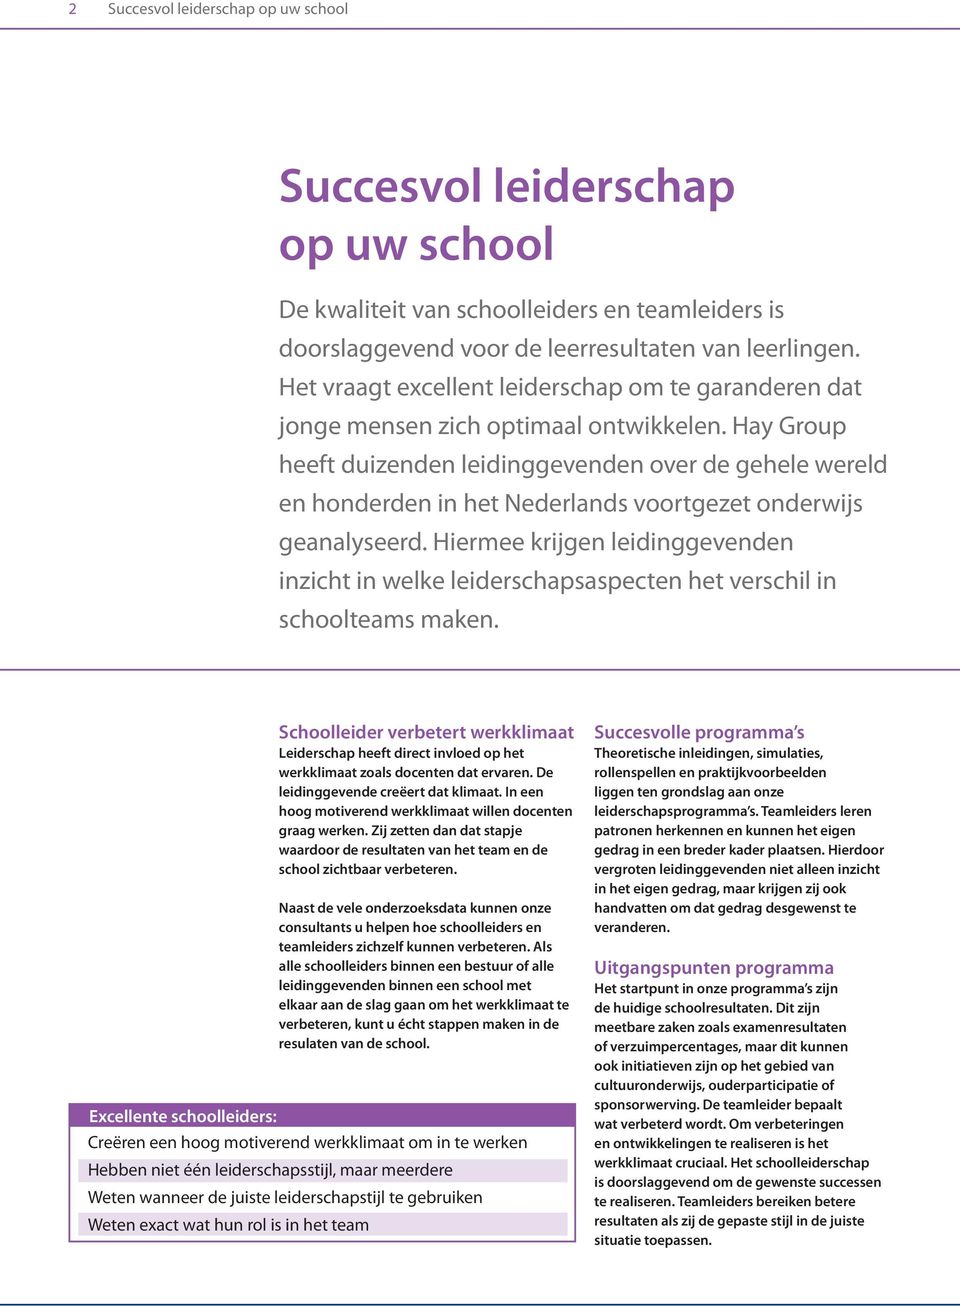 Hay Group heeft duizenden leidinggevenden over de gehele wereld en honderden in het Nederlands voortgezet onderwijs geanalyseerd.